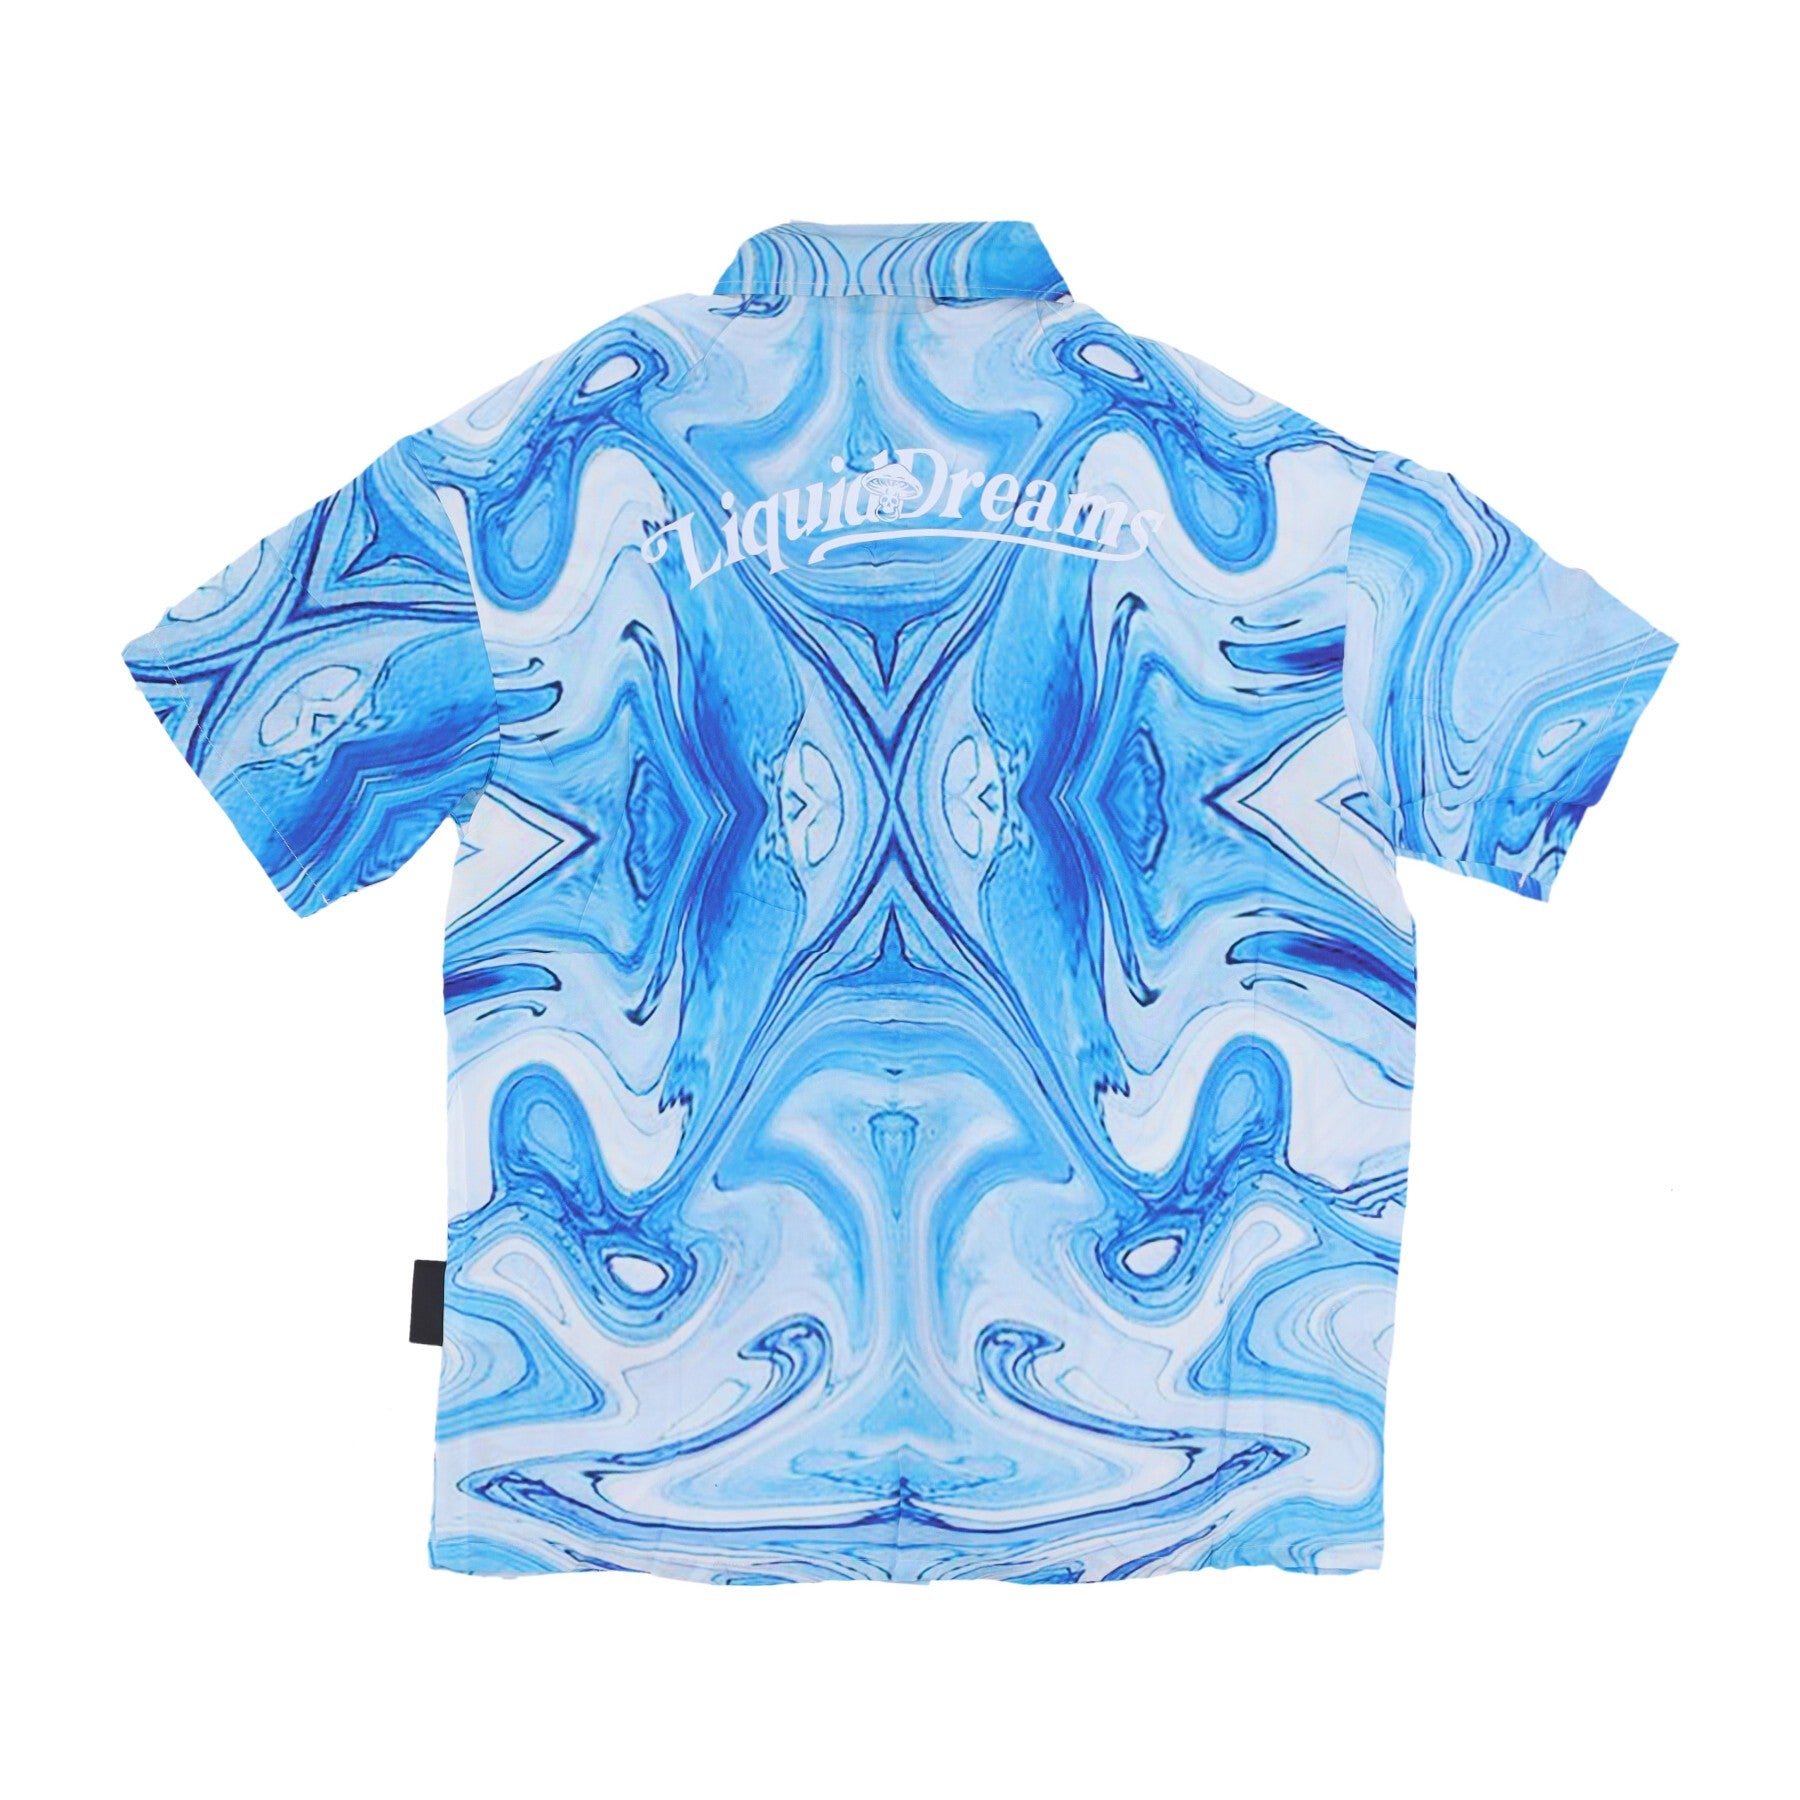 Men's Short Sleeve Shirt Allover Print Shirt Azure